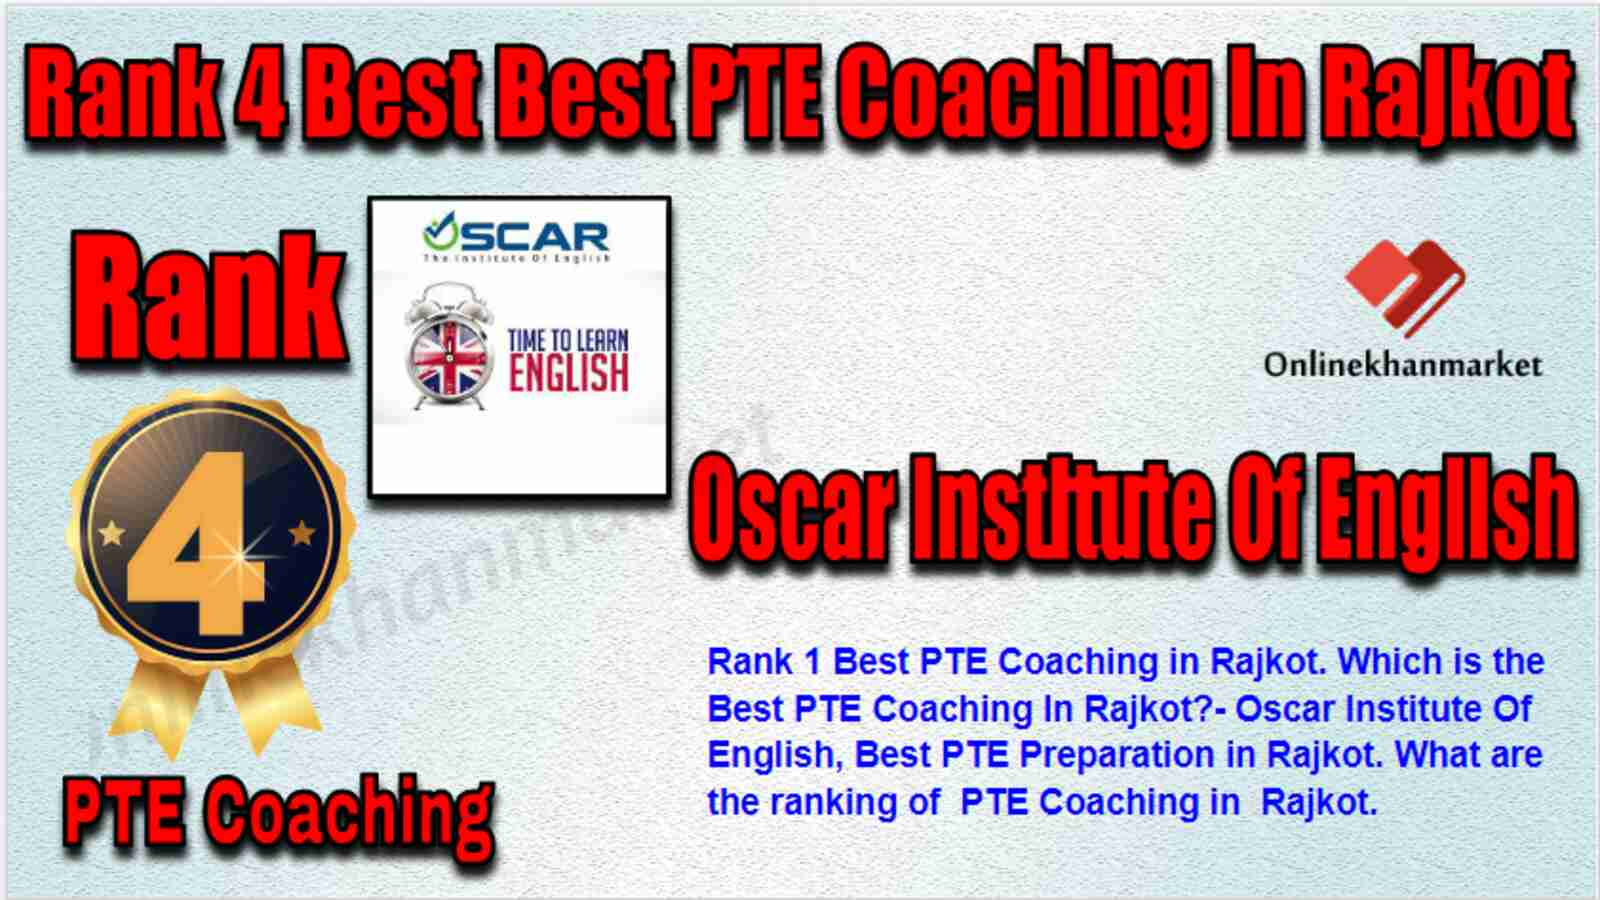 Rank 4 Best PTE Coaching in Rajkot